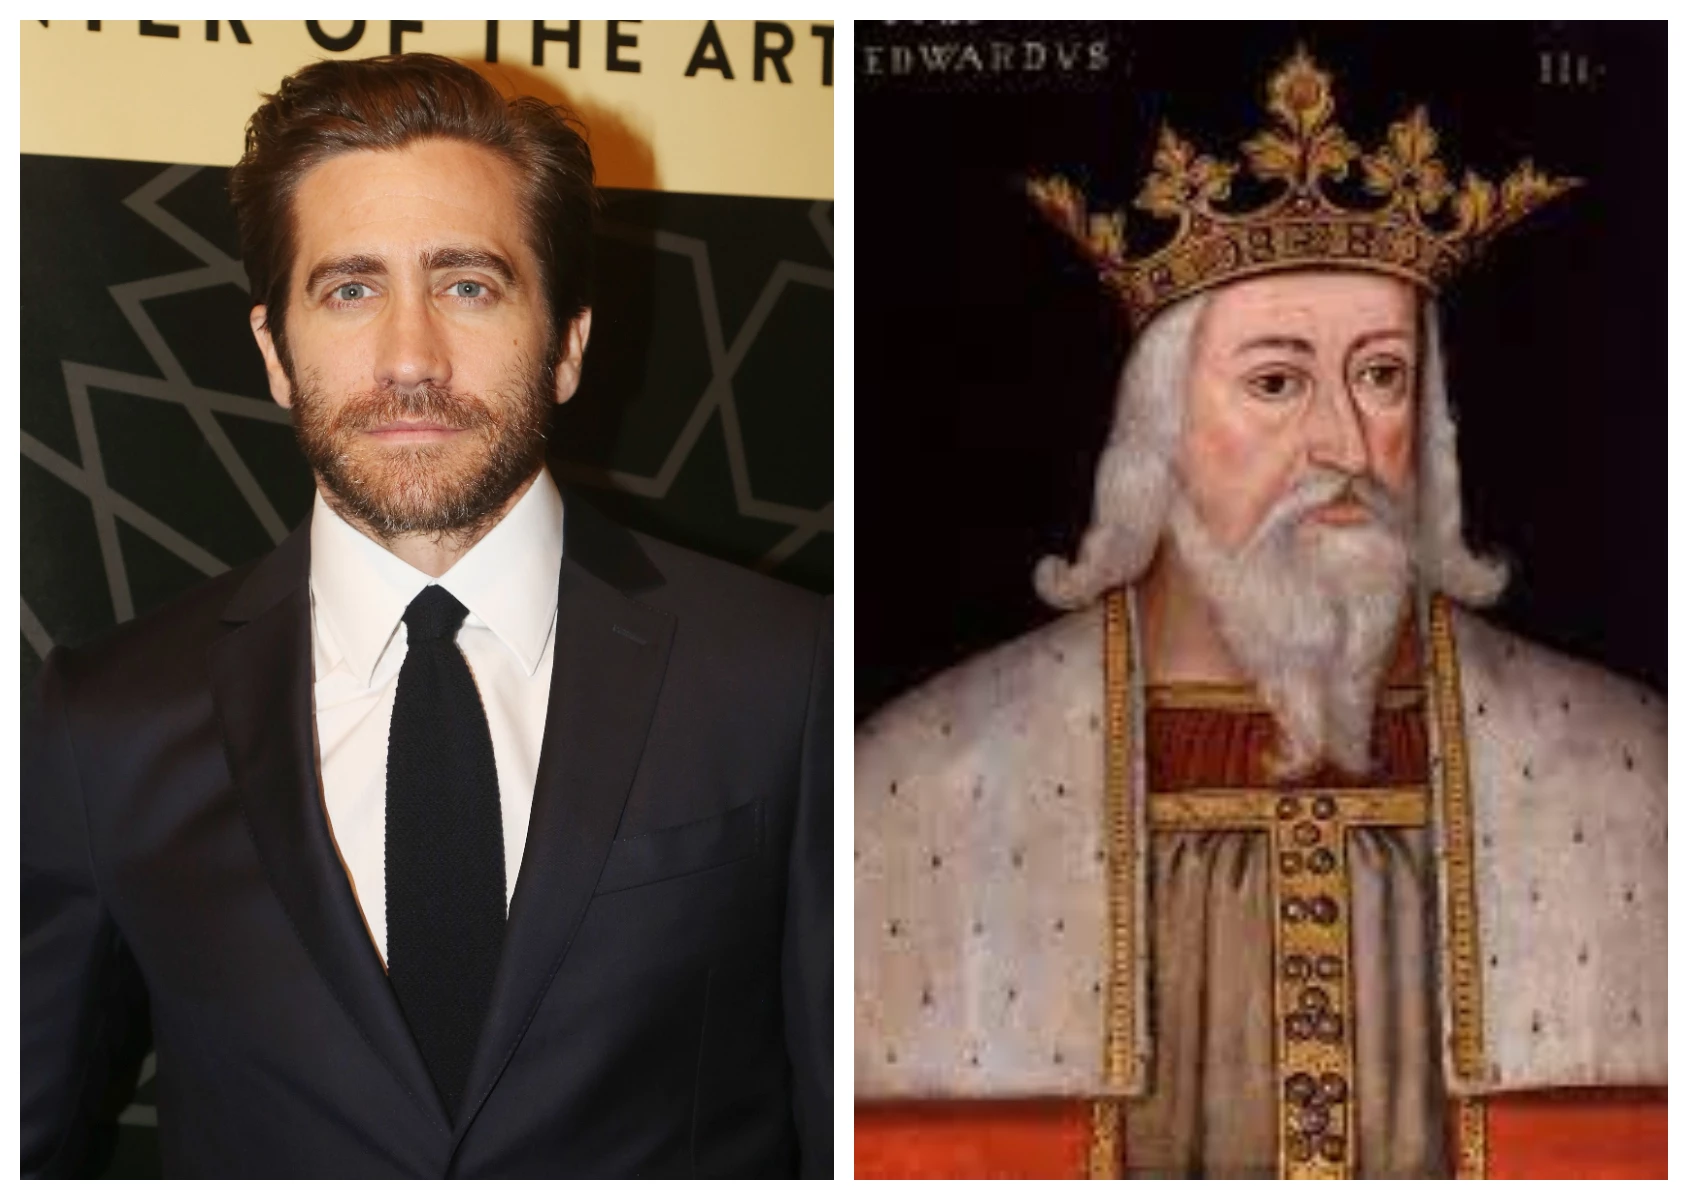 Jake Gyllenhaal and King Edward III